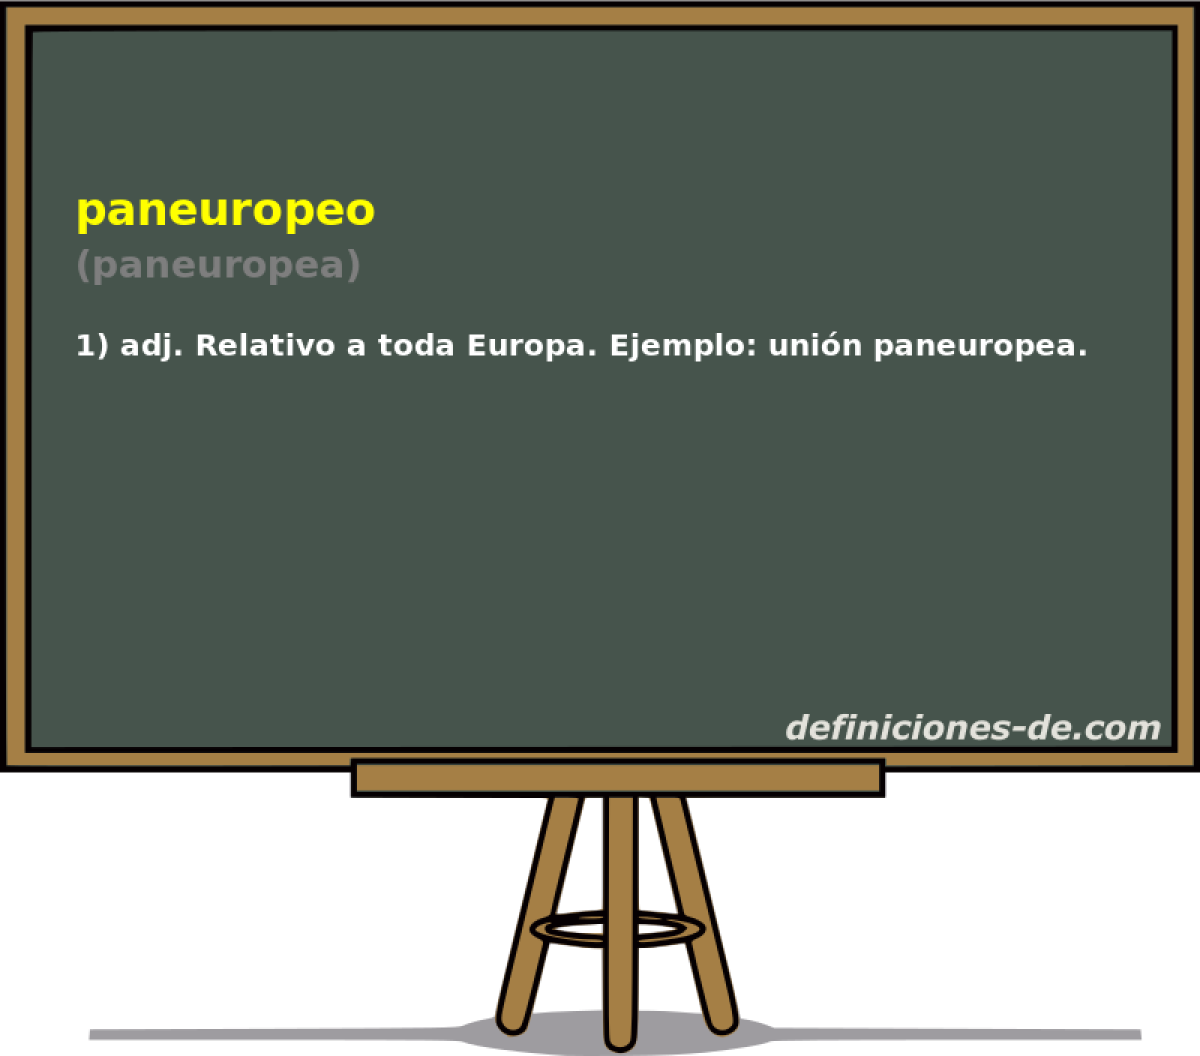 paneuropeo (paneuropea)